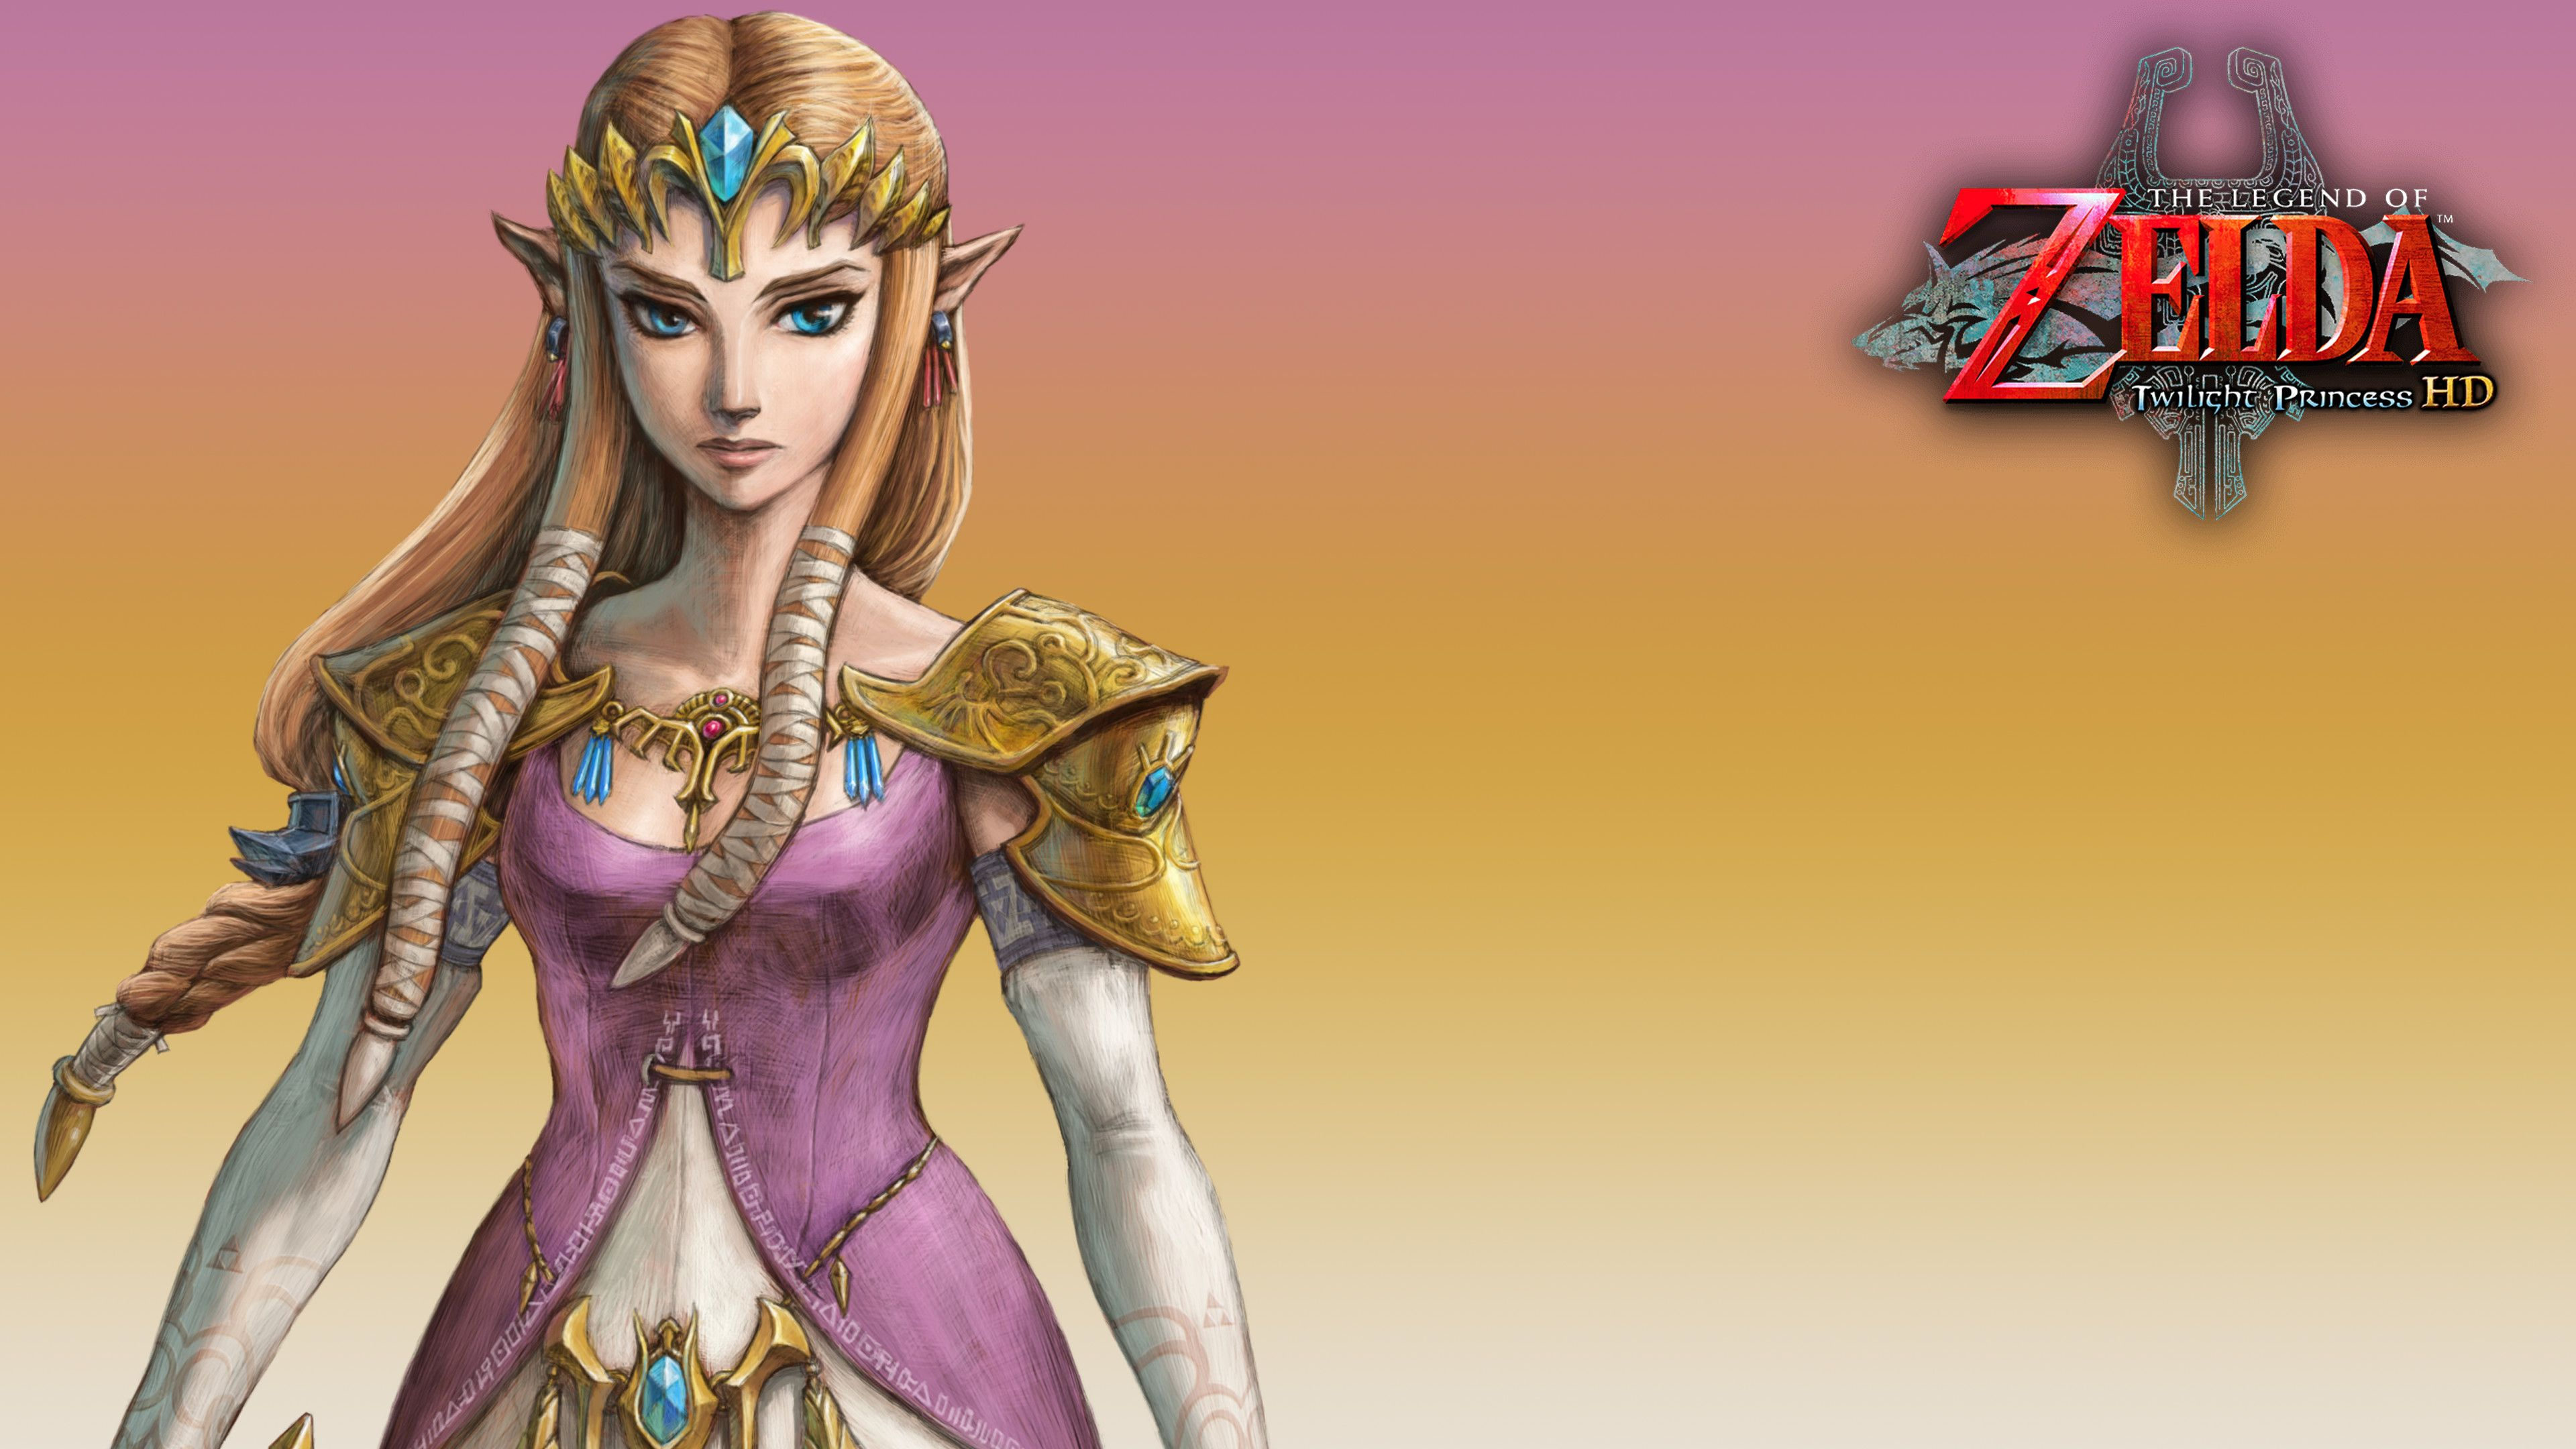 3840x2160 Princess Zelda Wallpapers Top Free Princess Zelda Backgrounds